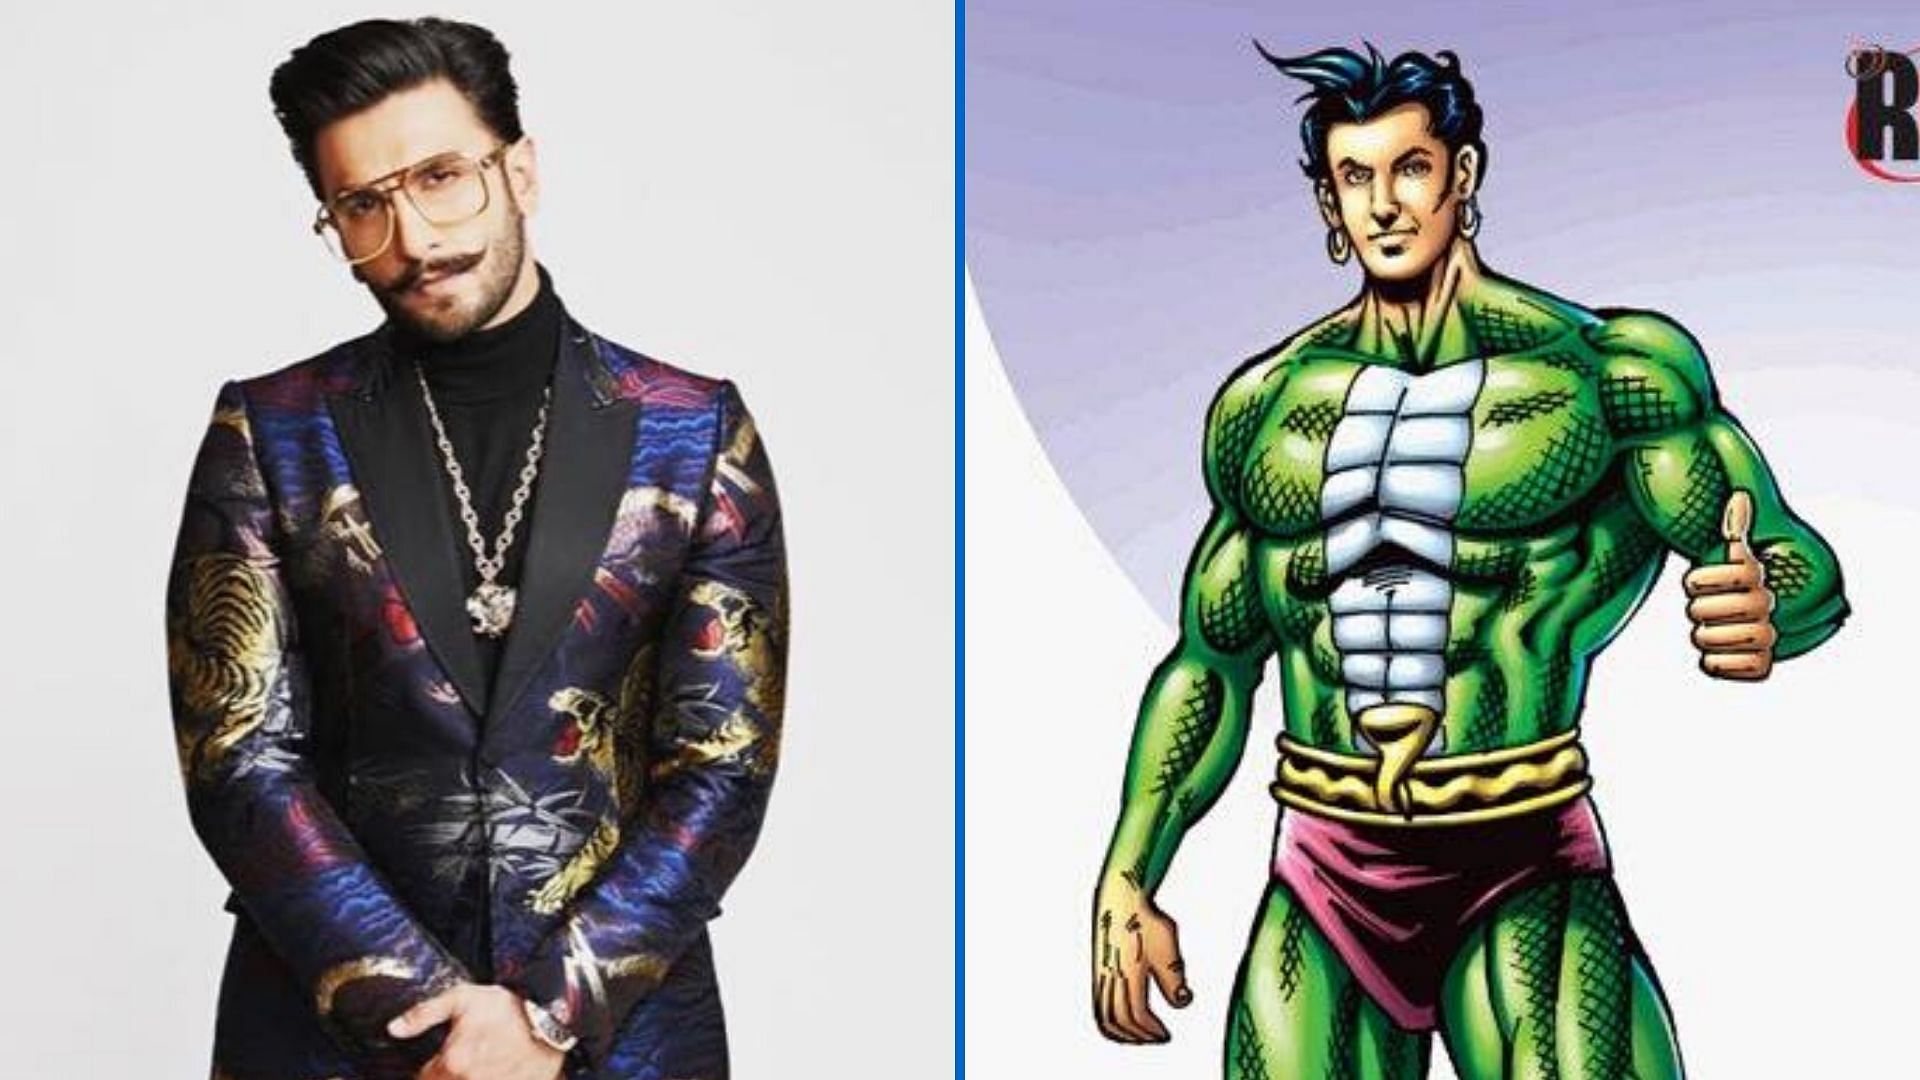 Ranveer Singh will reportedly play comic book superhero Nagraj in a film.